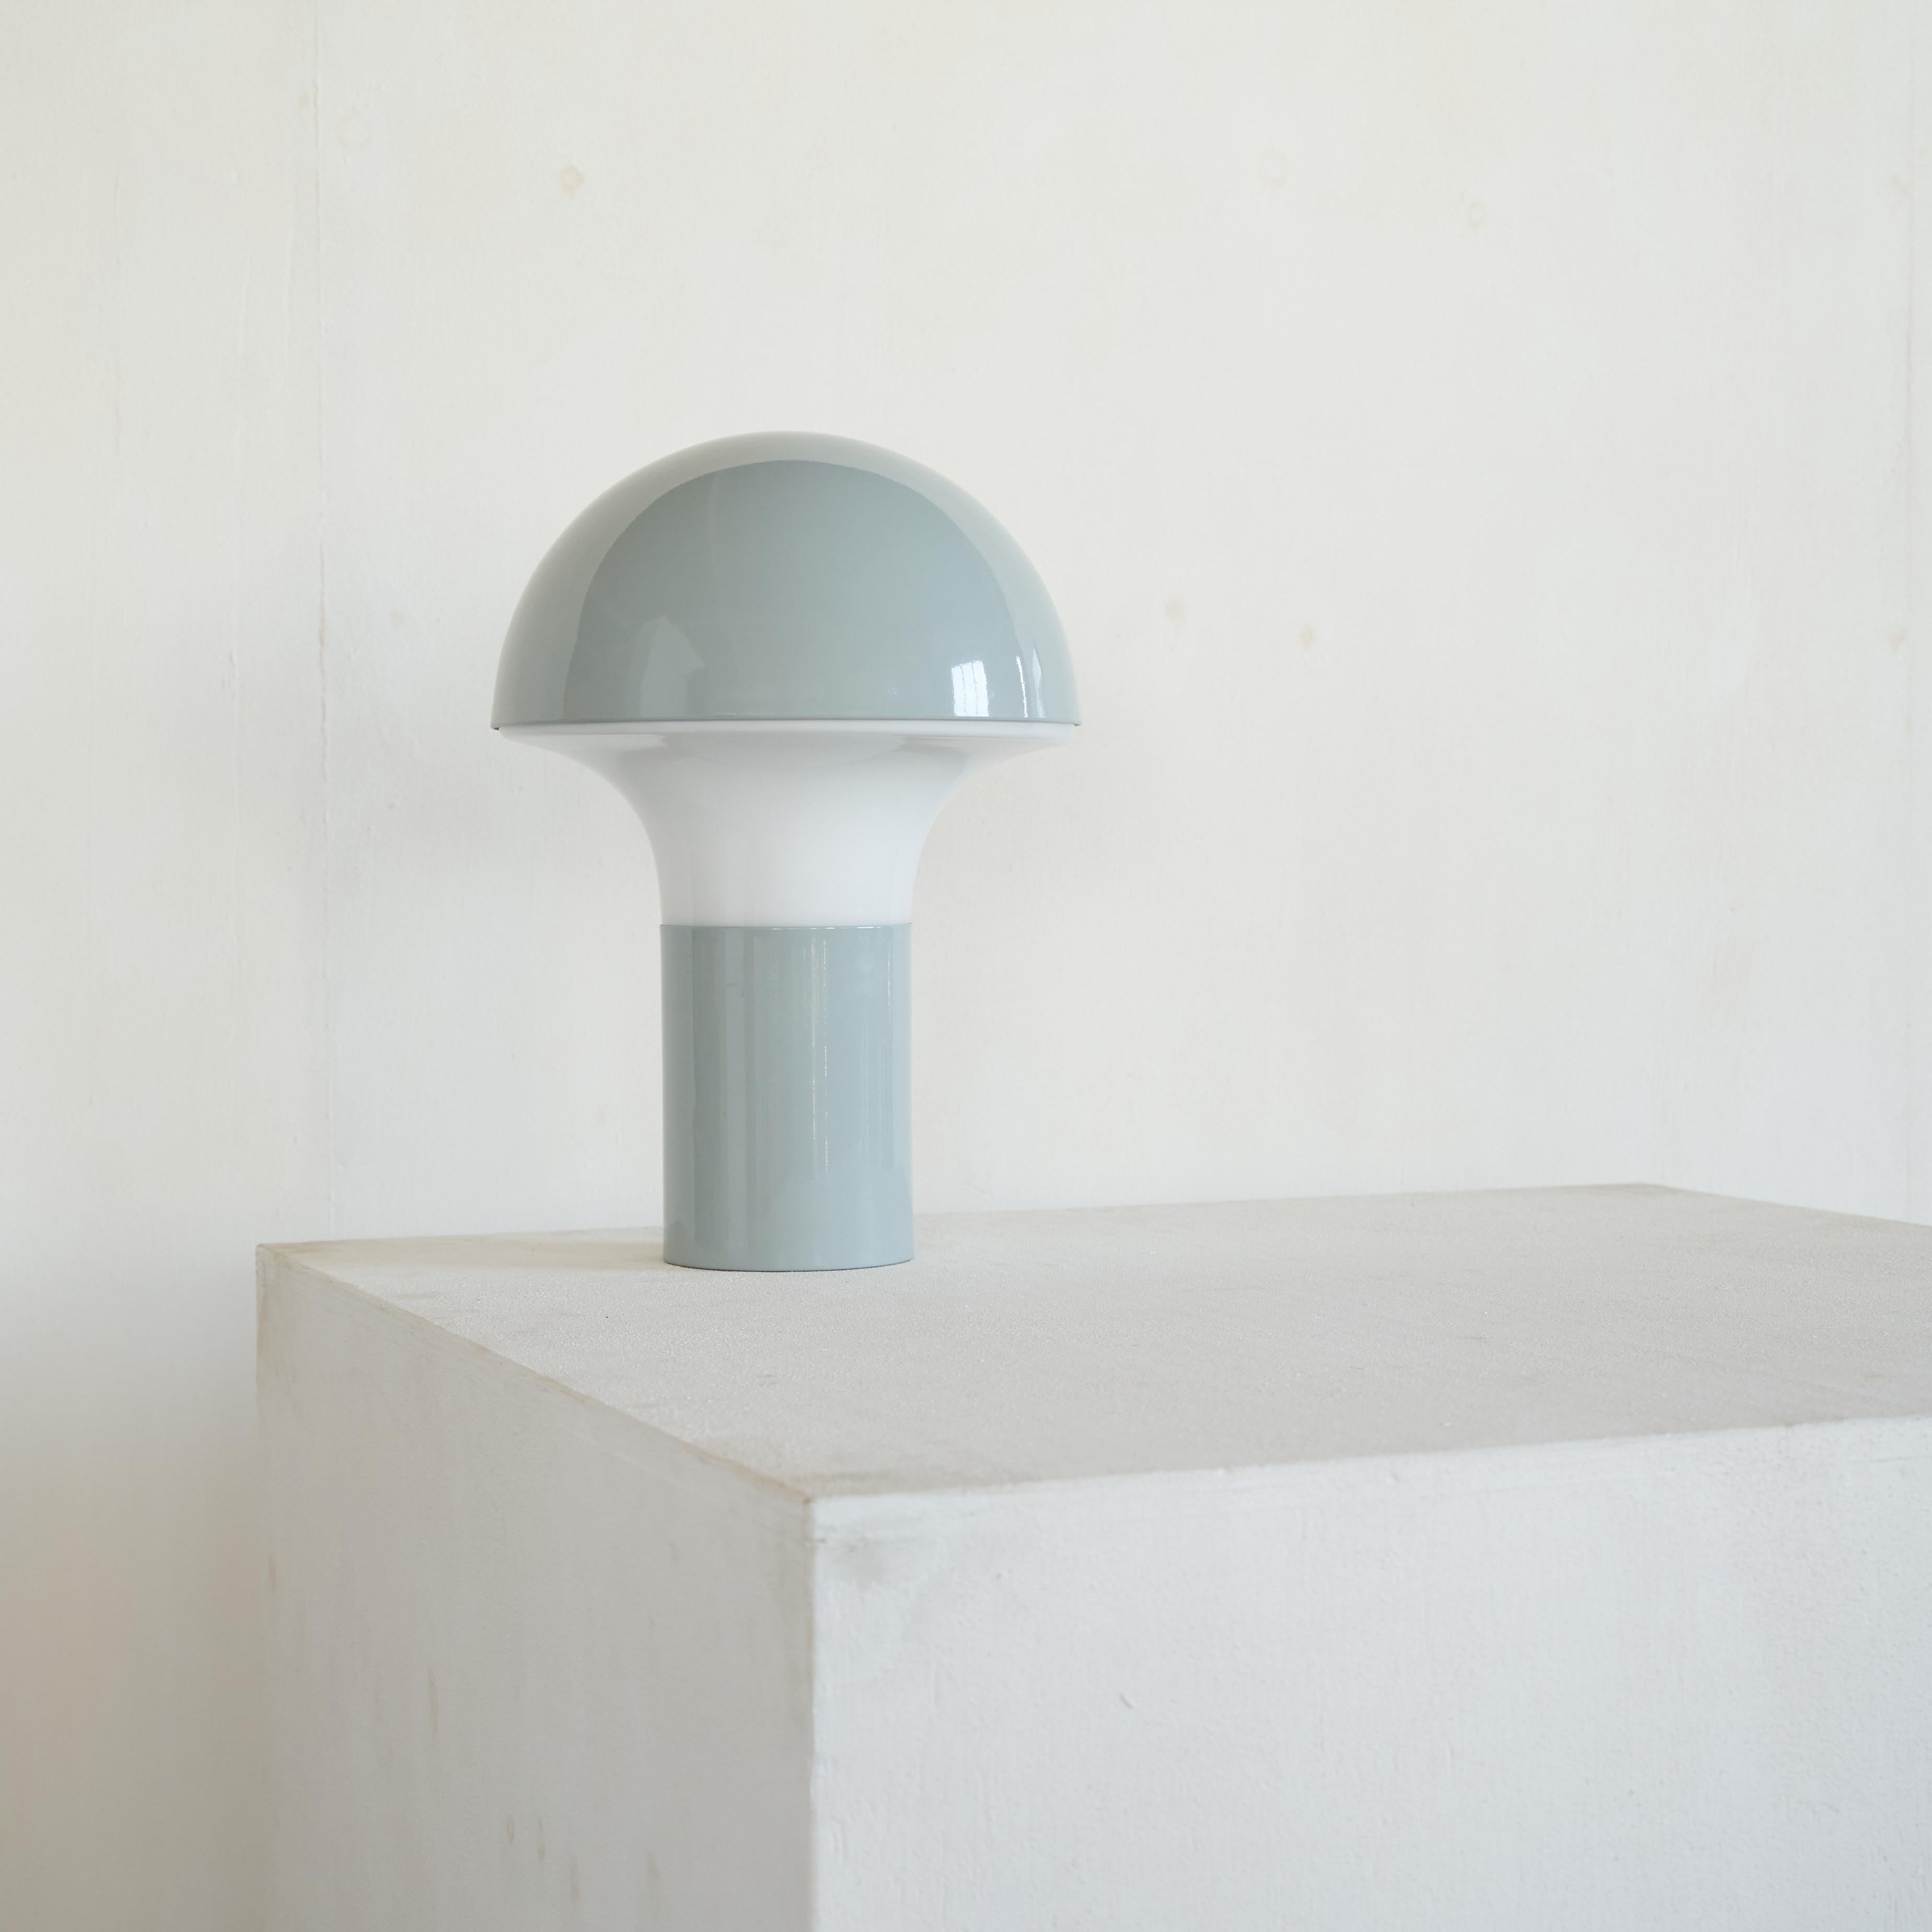 Lampe de table champignon en métal bleu clair et verre opalin. Fiesole, Florence, Italie, années 1970.

Il s'agit d'une grande lampe de table à champignon en verre opalin et bleu layette provenant d'Italie. Fabriqué dans les années 1970 par une